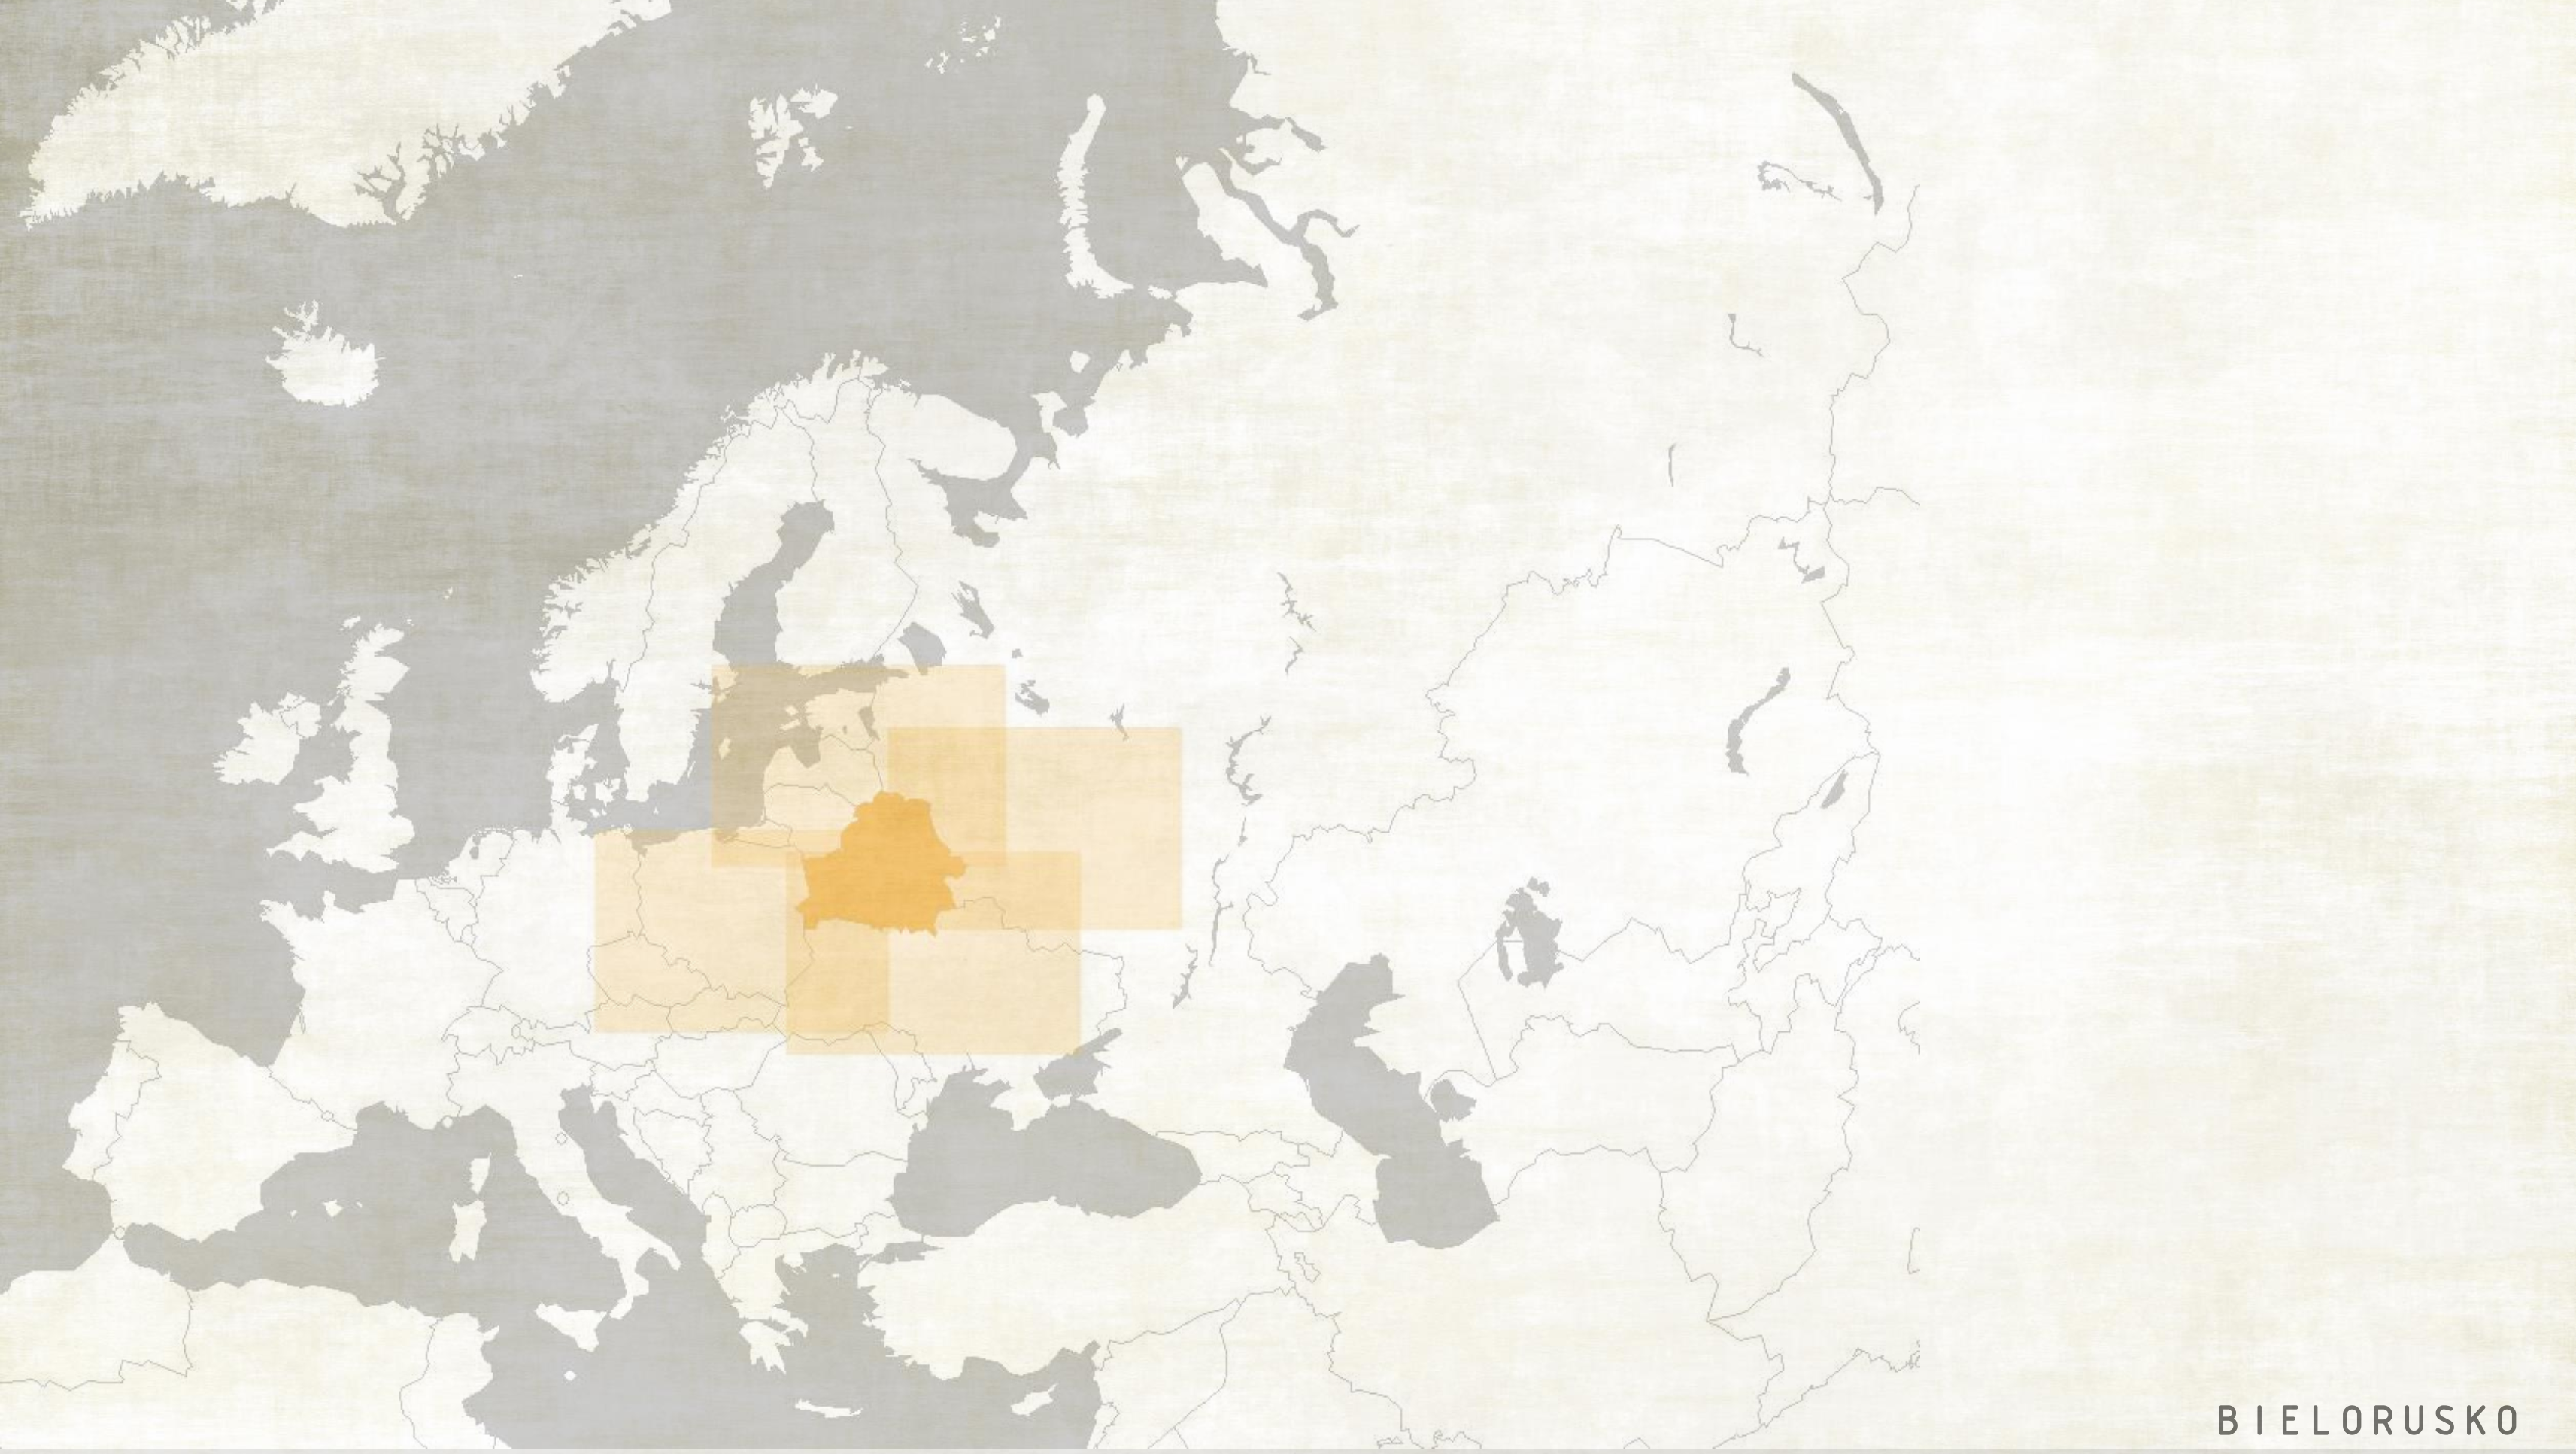 Lokalizácia v rámci Európy